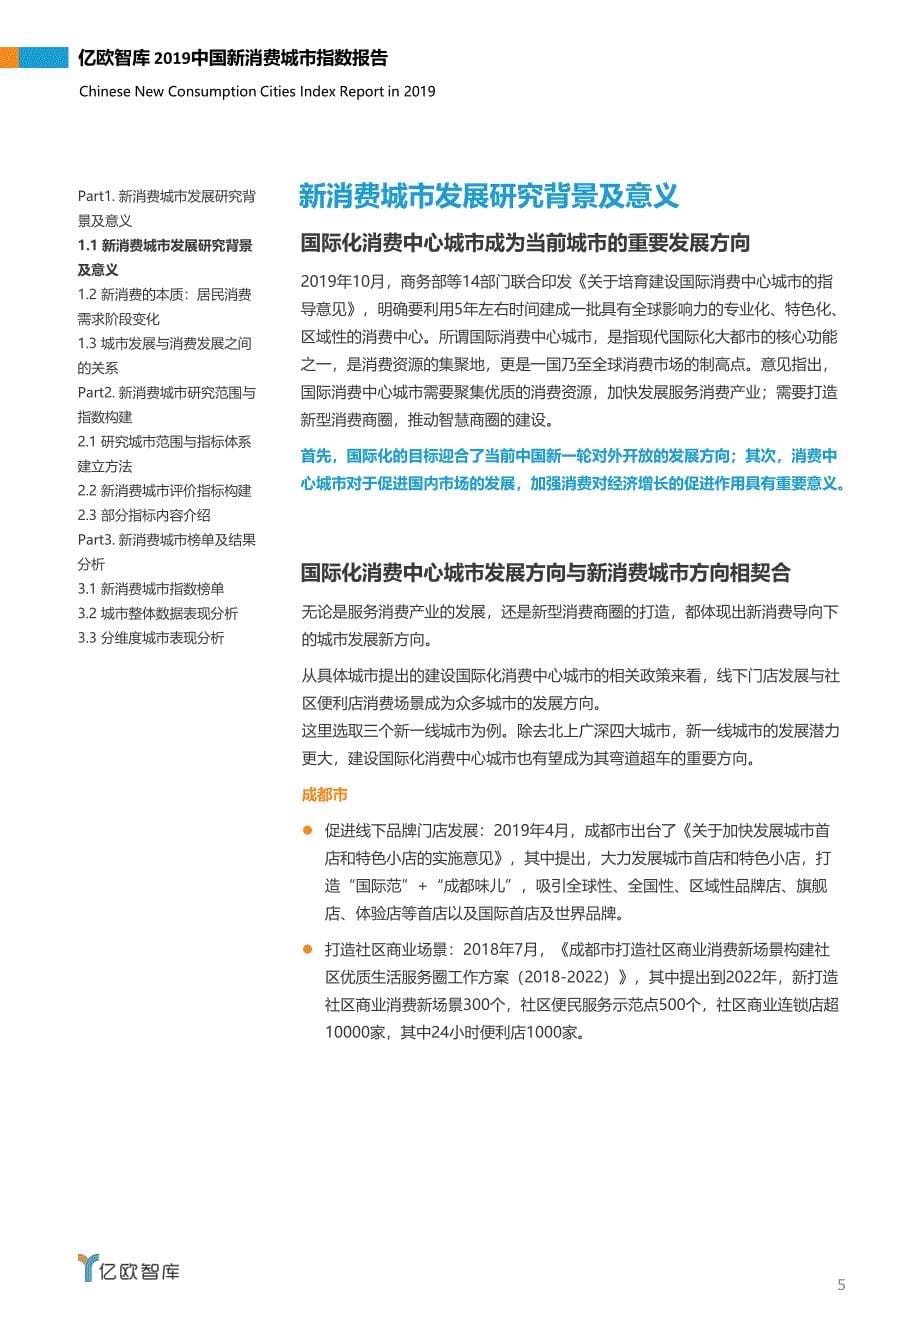 2019中国新消费城市指数报告-亿欧智库-202001_第5页